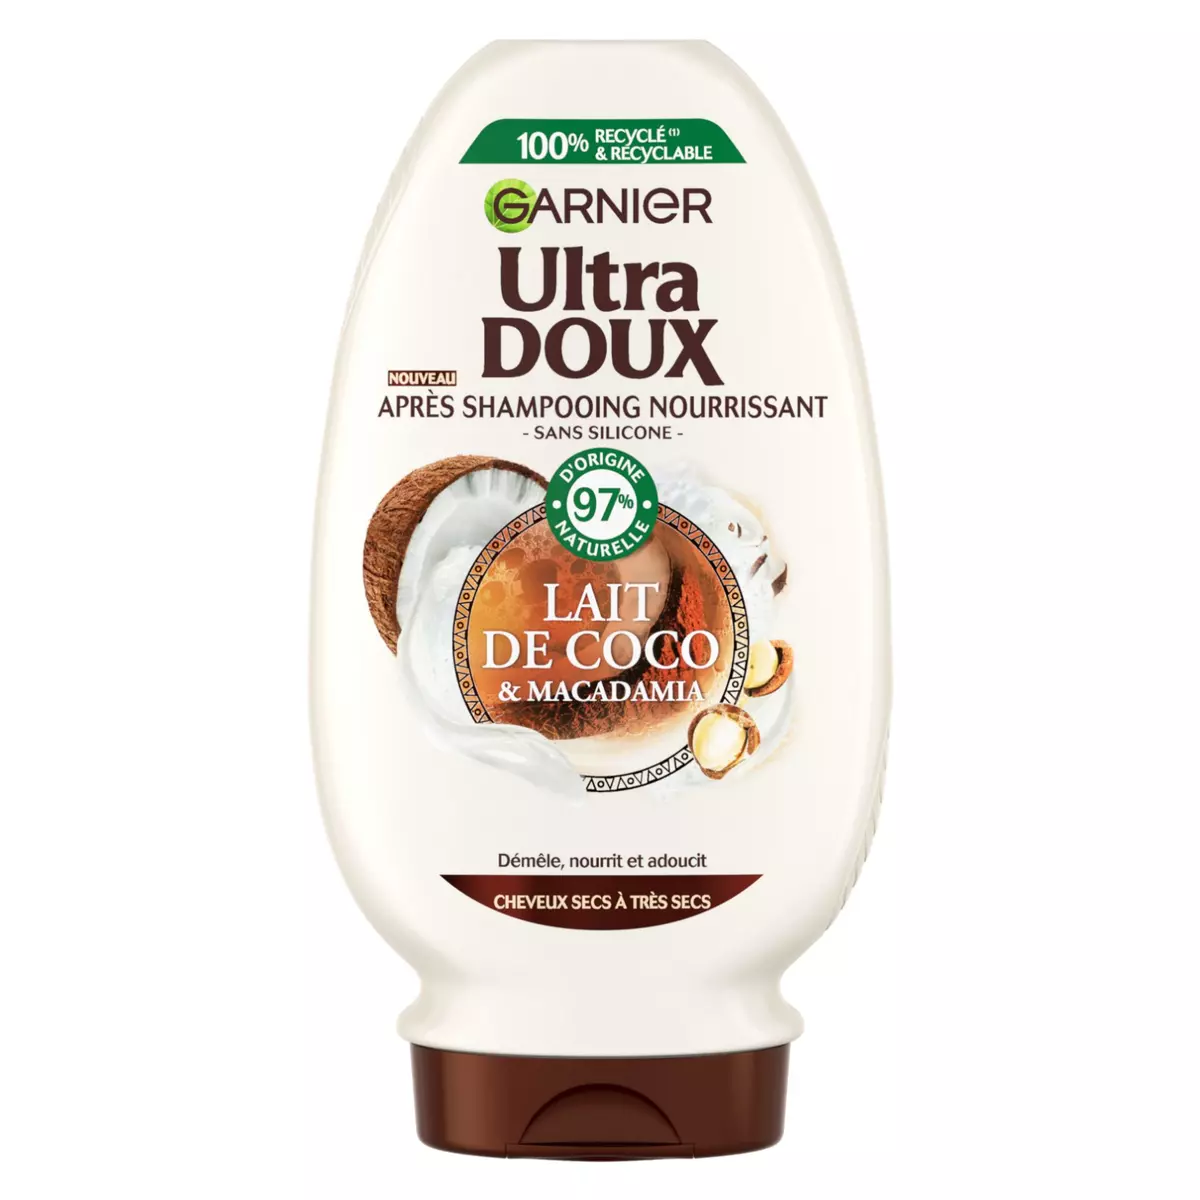 GARNIER ULTRA DOUX Après shampooing nourrissant pour cheveux secs lait de coco macadamia 250ml